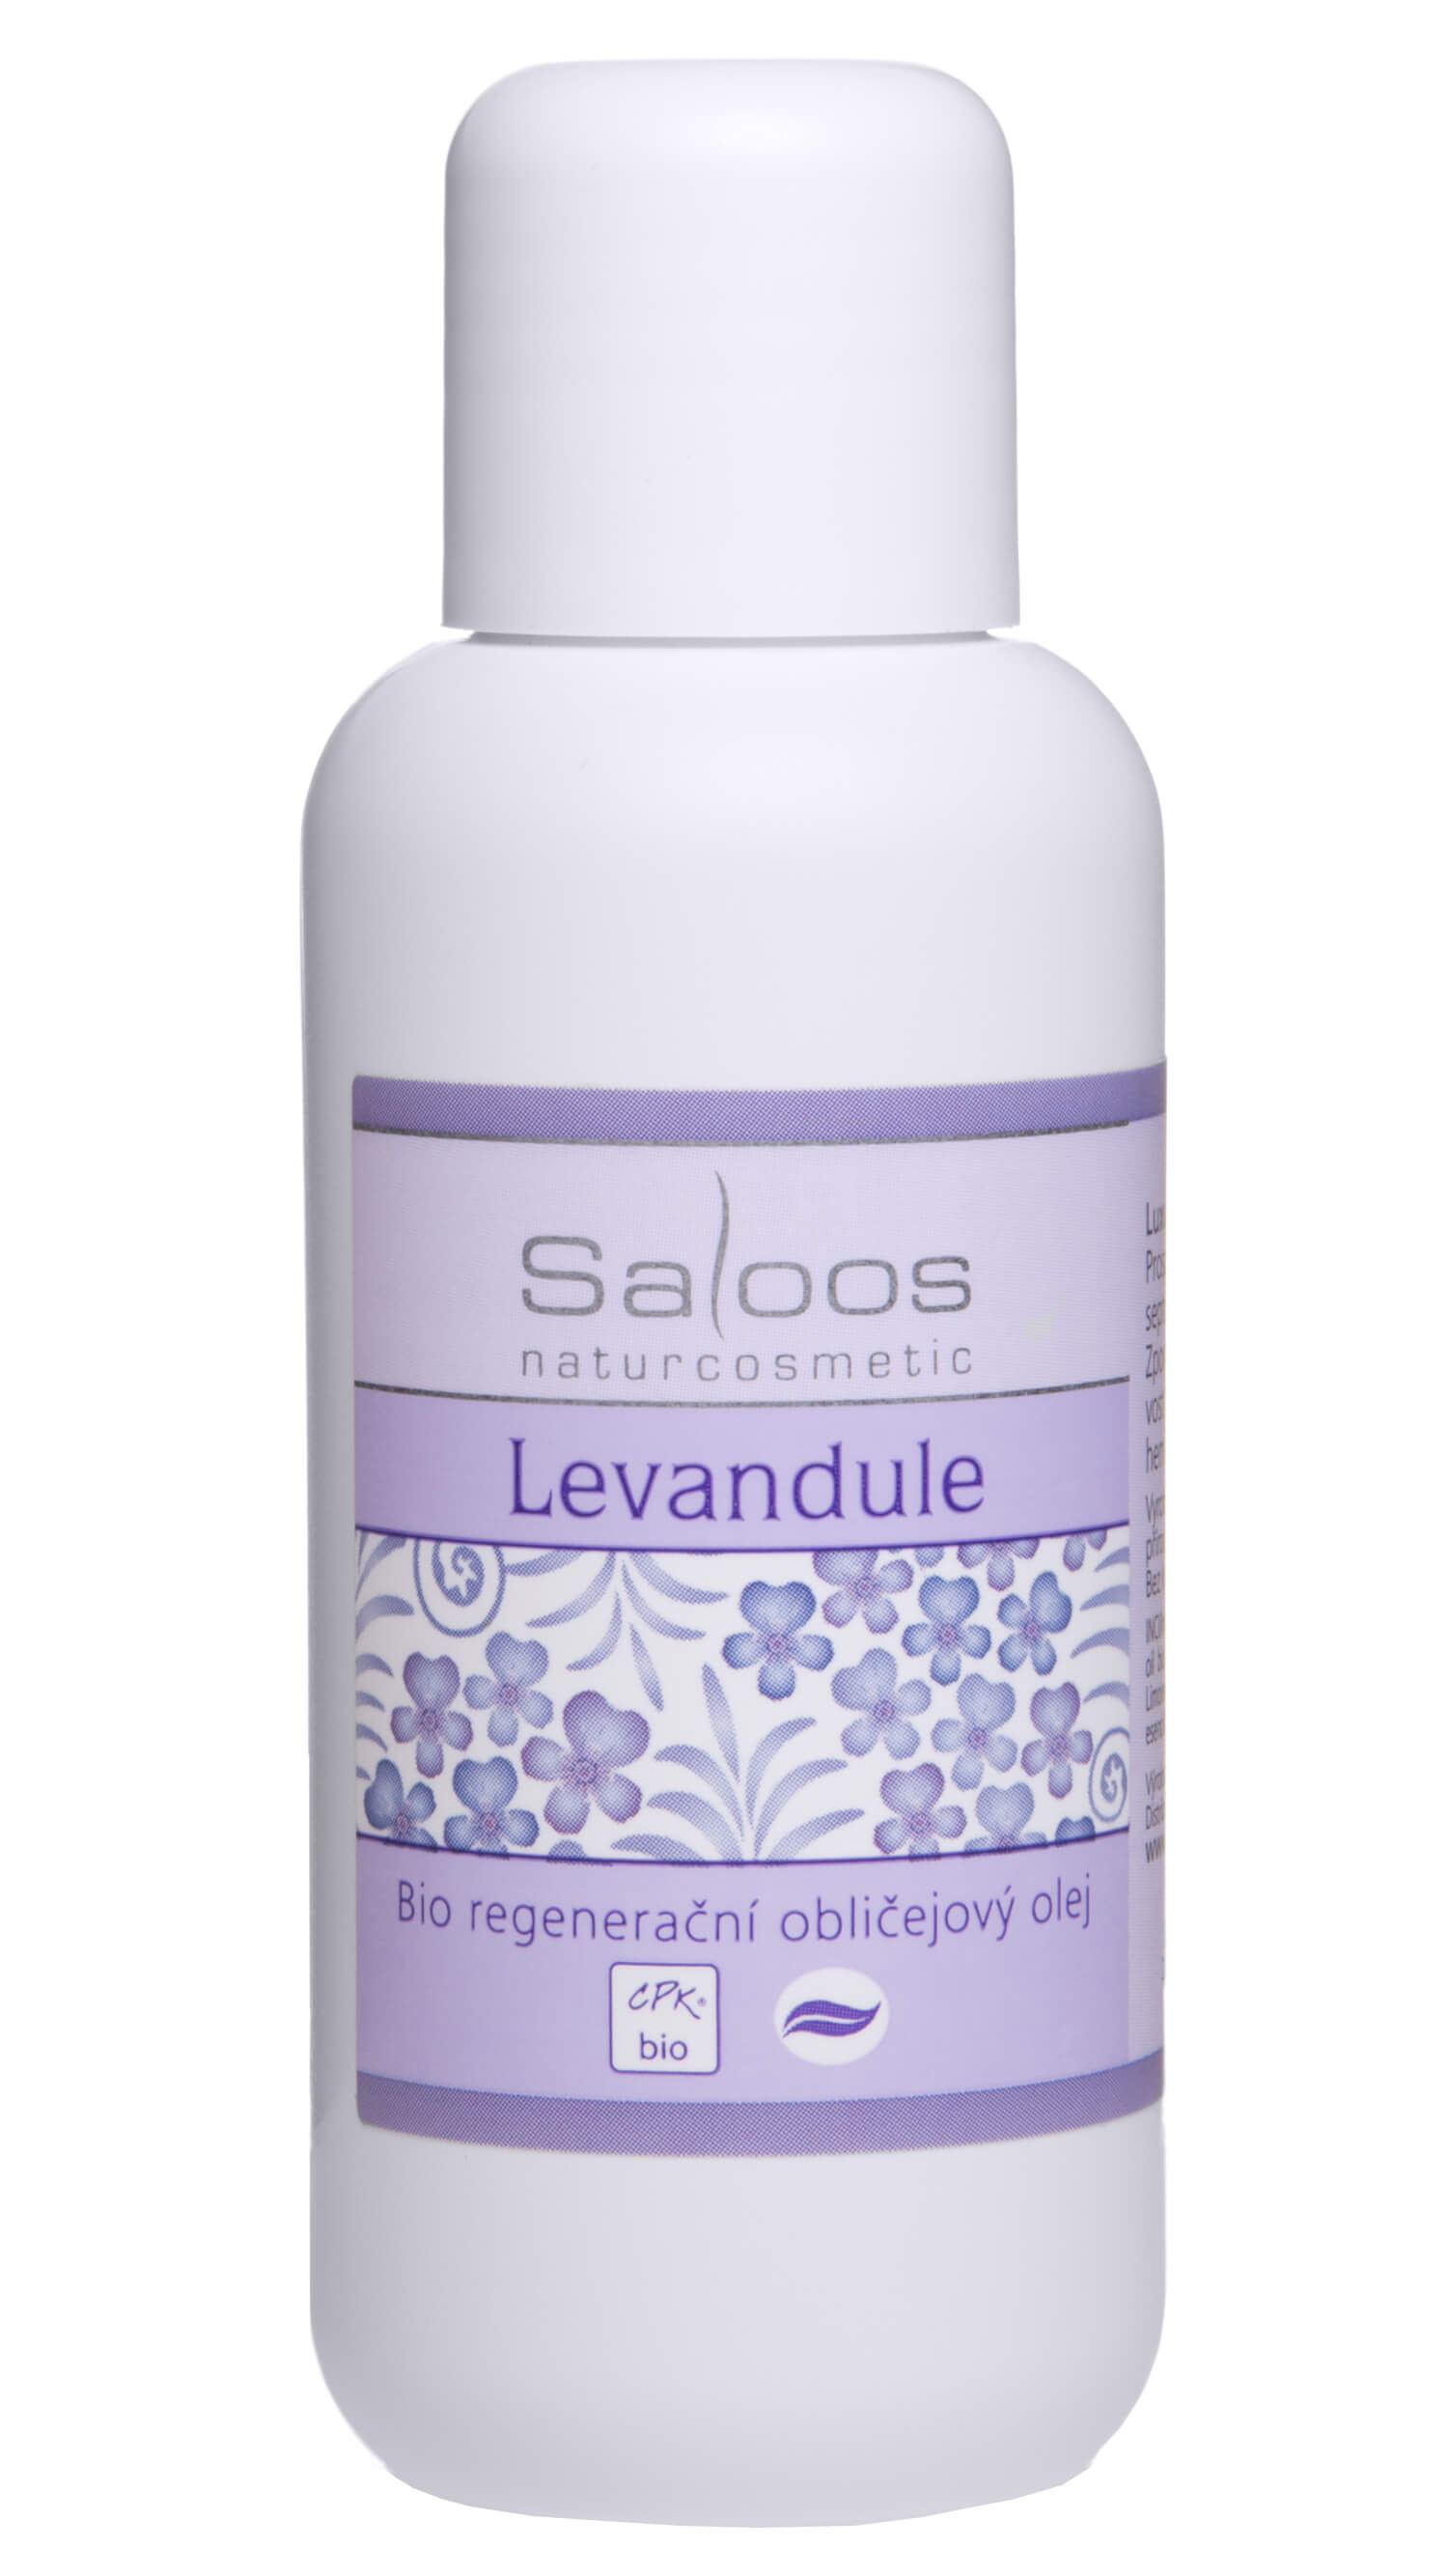 Saloos Bio regeneračný tvárový olej - Levanduľa 100 ml + 2 mesiace na vrátenie tovaru